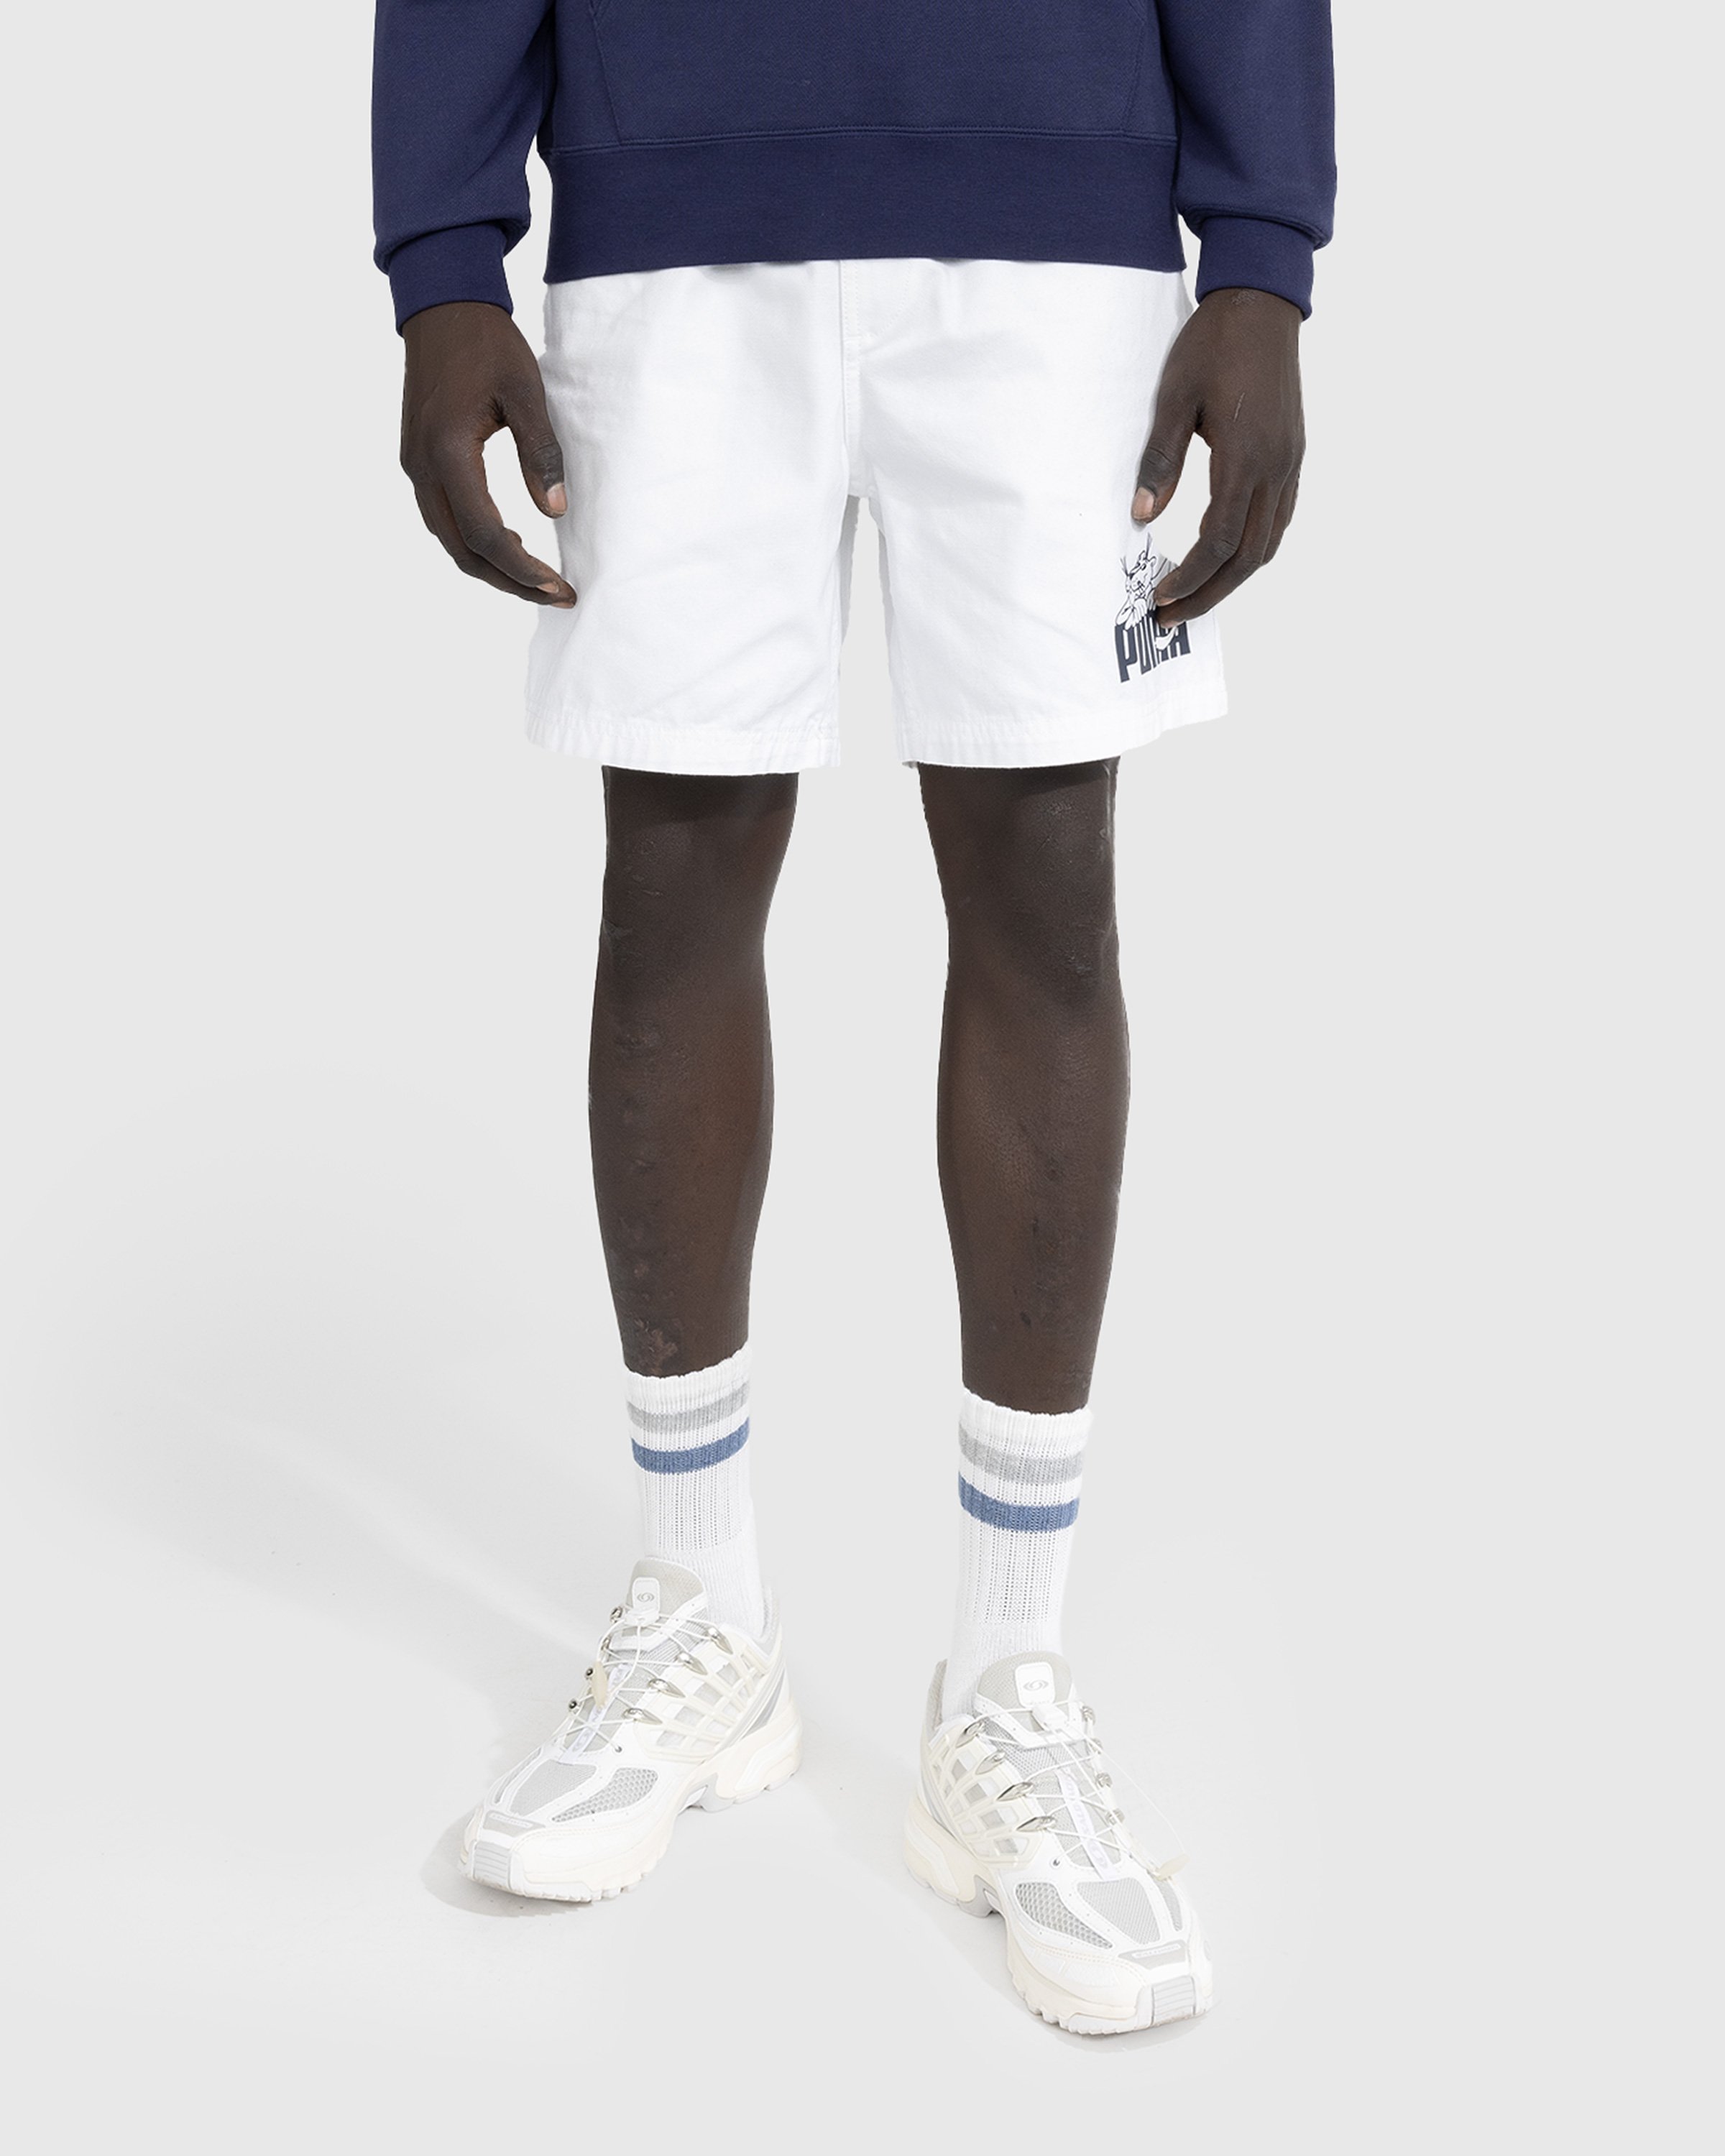 Puma - NOAH Shorts - Clothing - White - Image 2